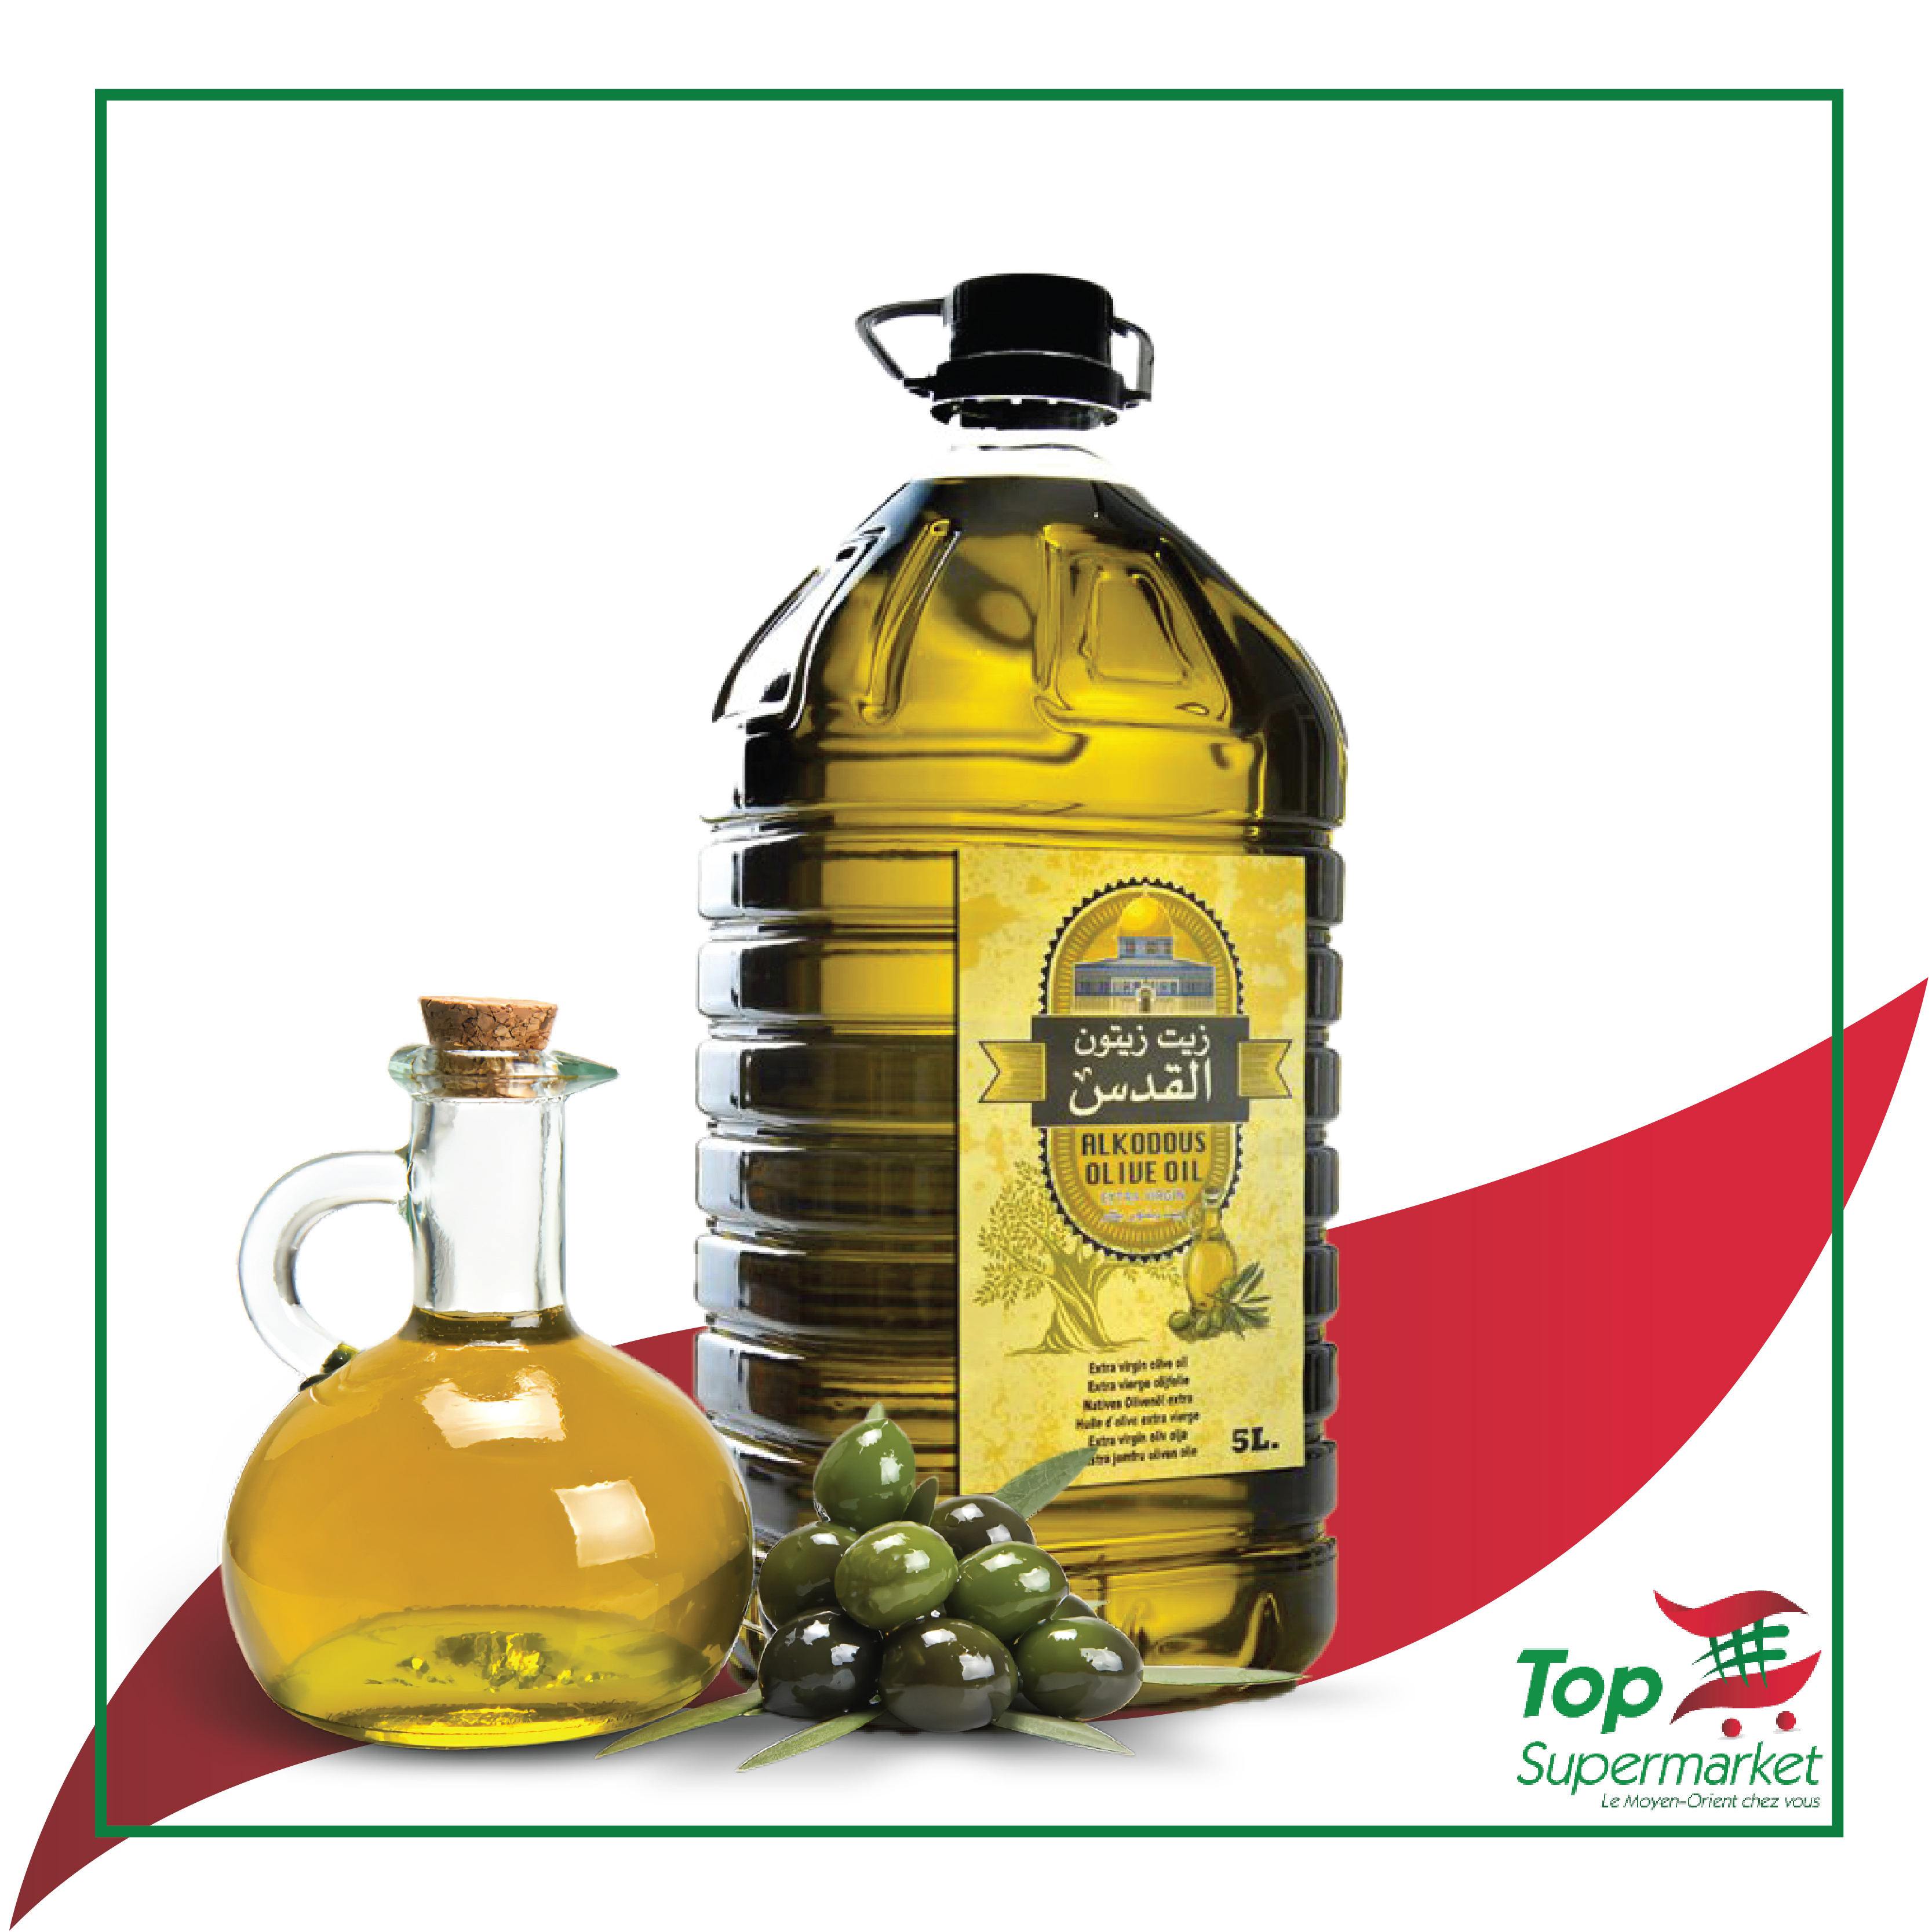 Al Kodous huile d'olive 5L